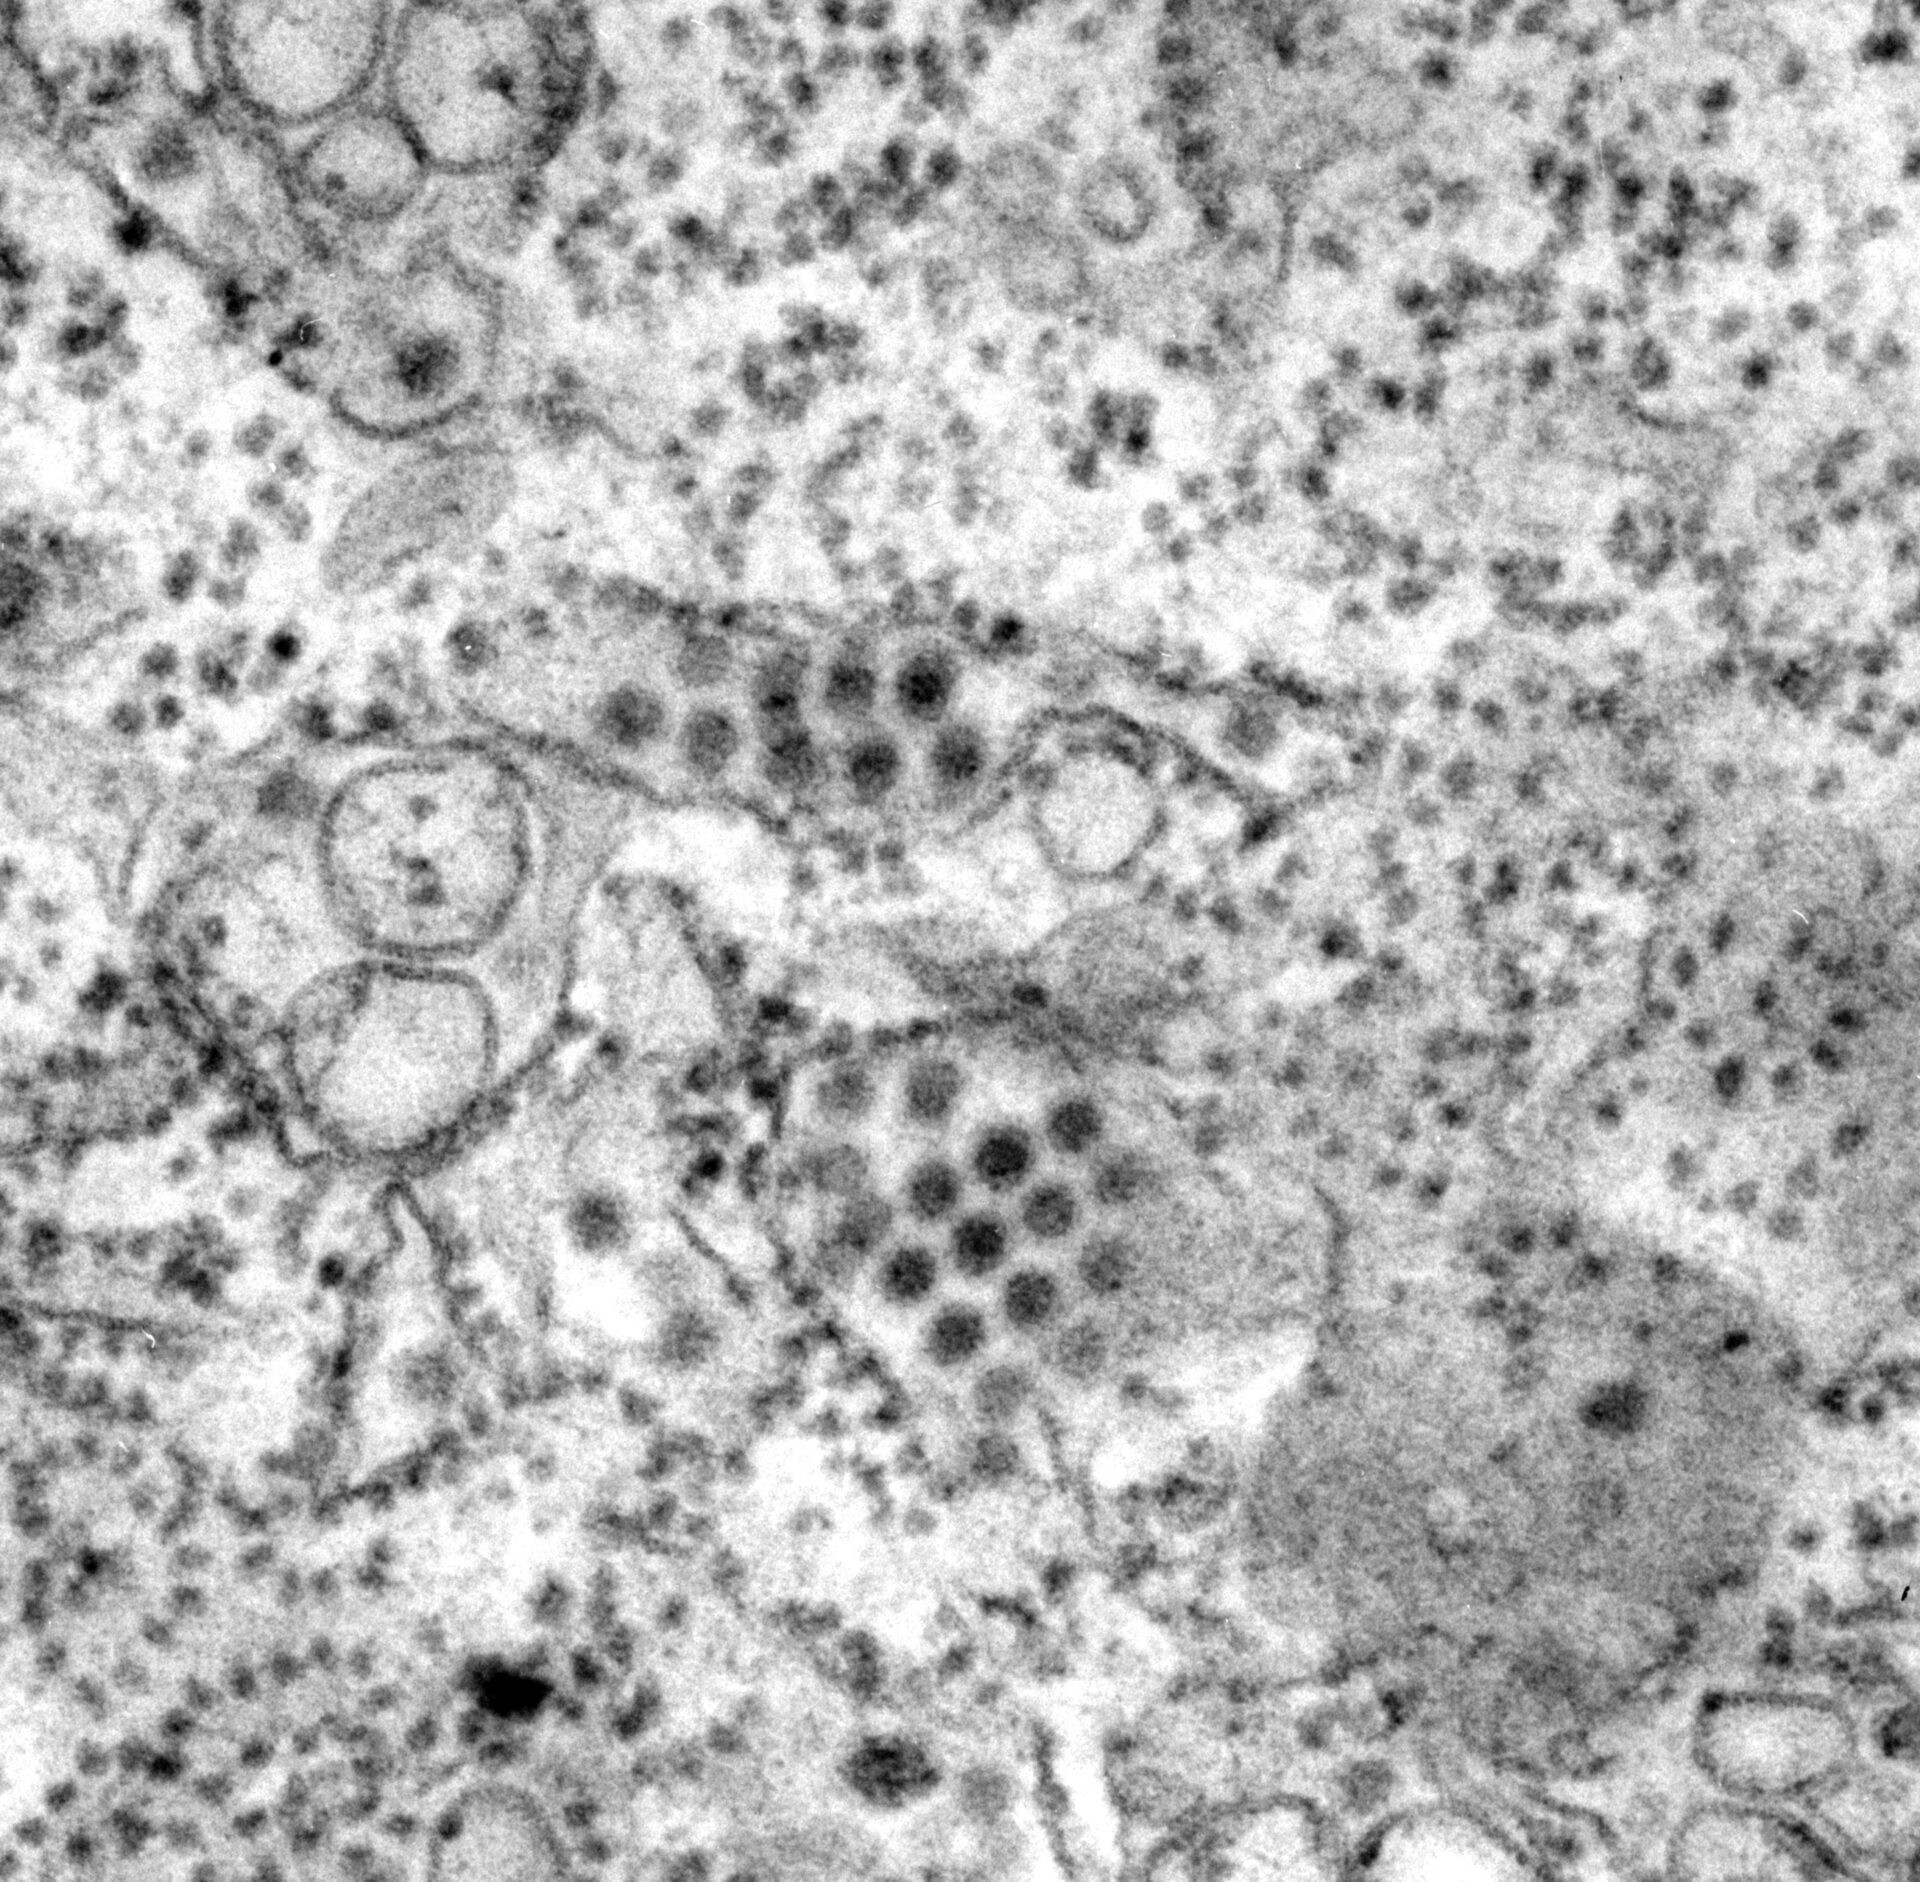 Image en microscopie électronique à transmission de particules du virus de la dengue